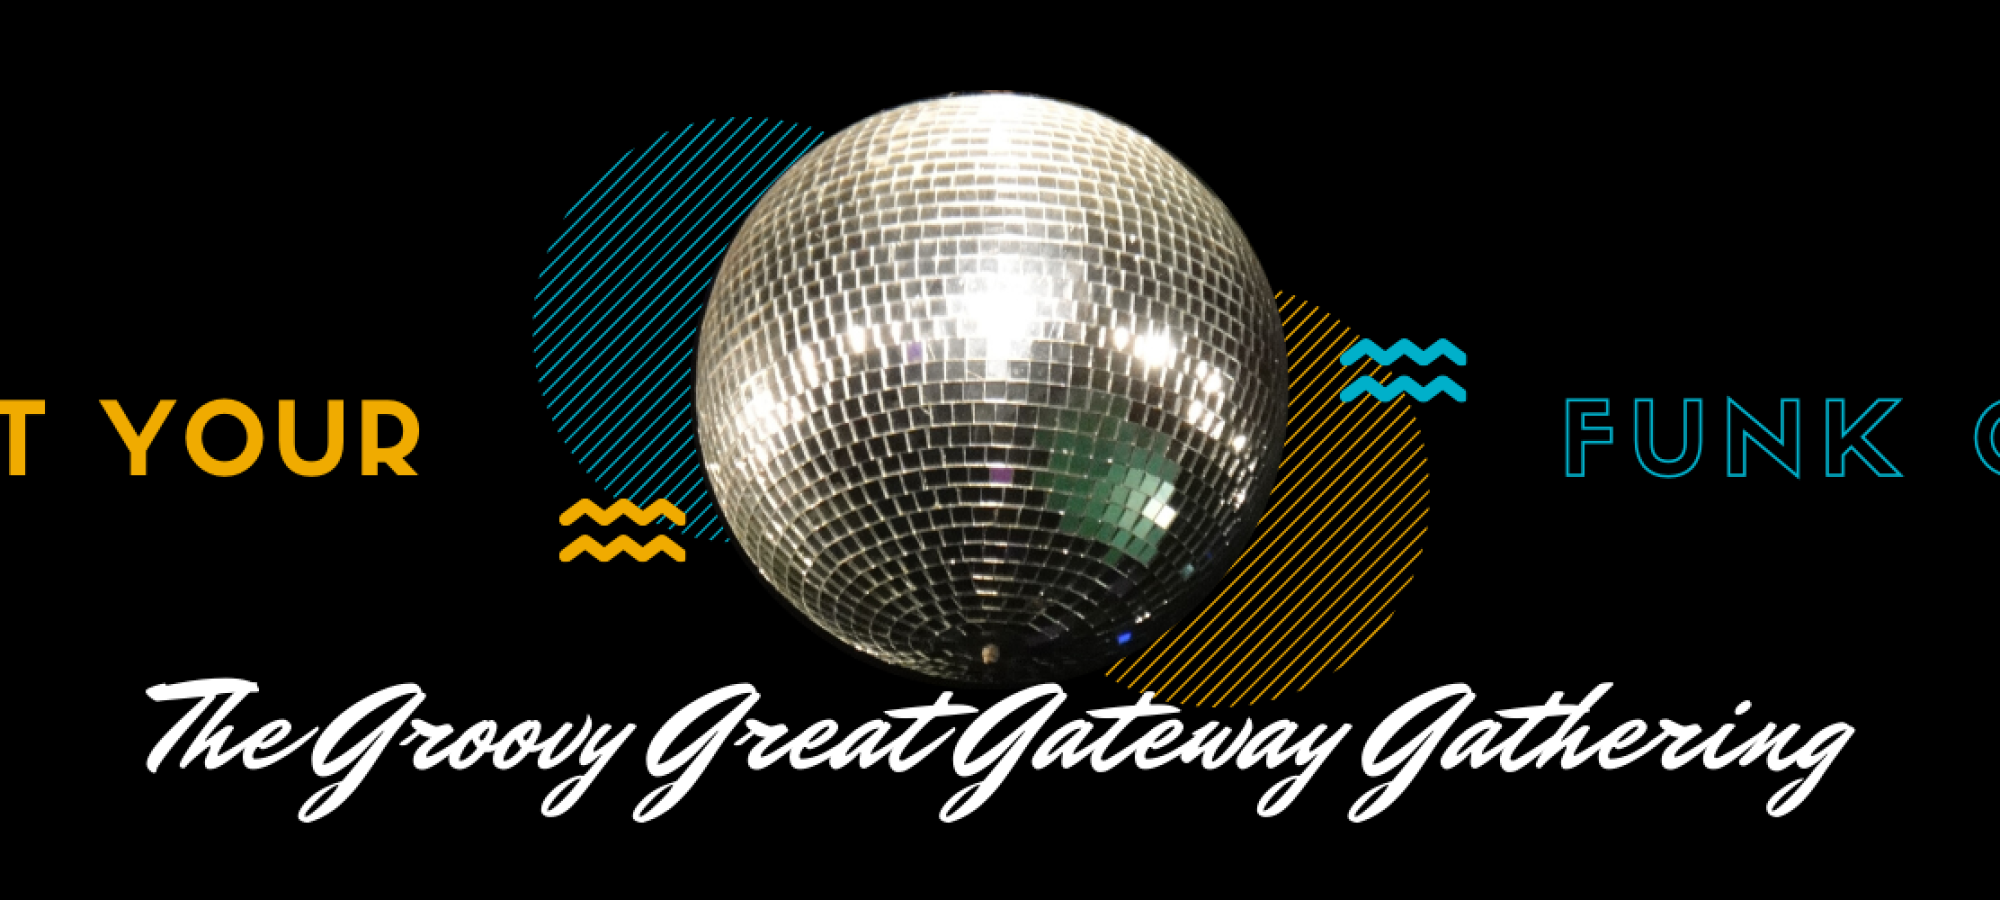 2020 Great Gateway Gathering Logo